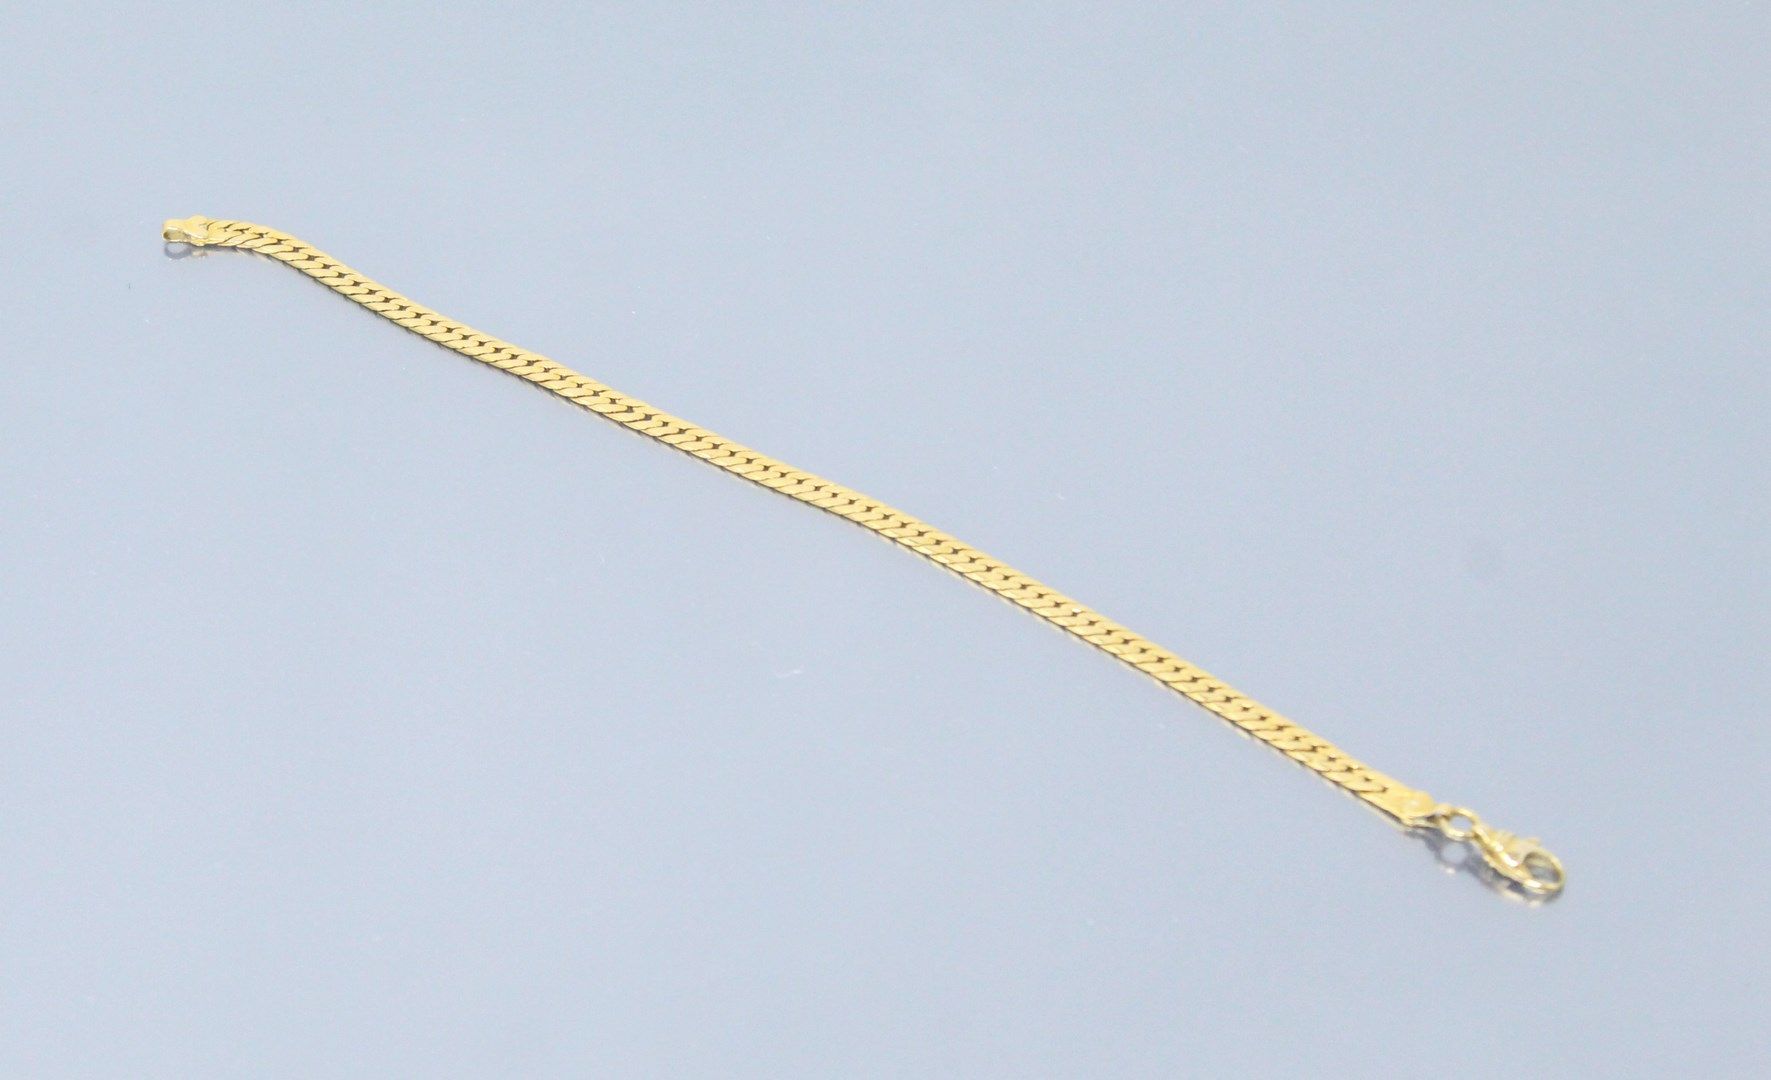 Null Armband aus 18k (750) Gelbgold.

Adlerkopfpunze. 

Größe des Handgelenks: 1&hellip;